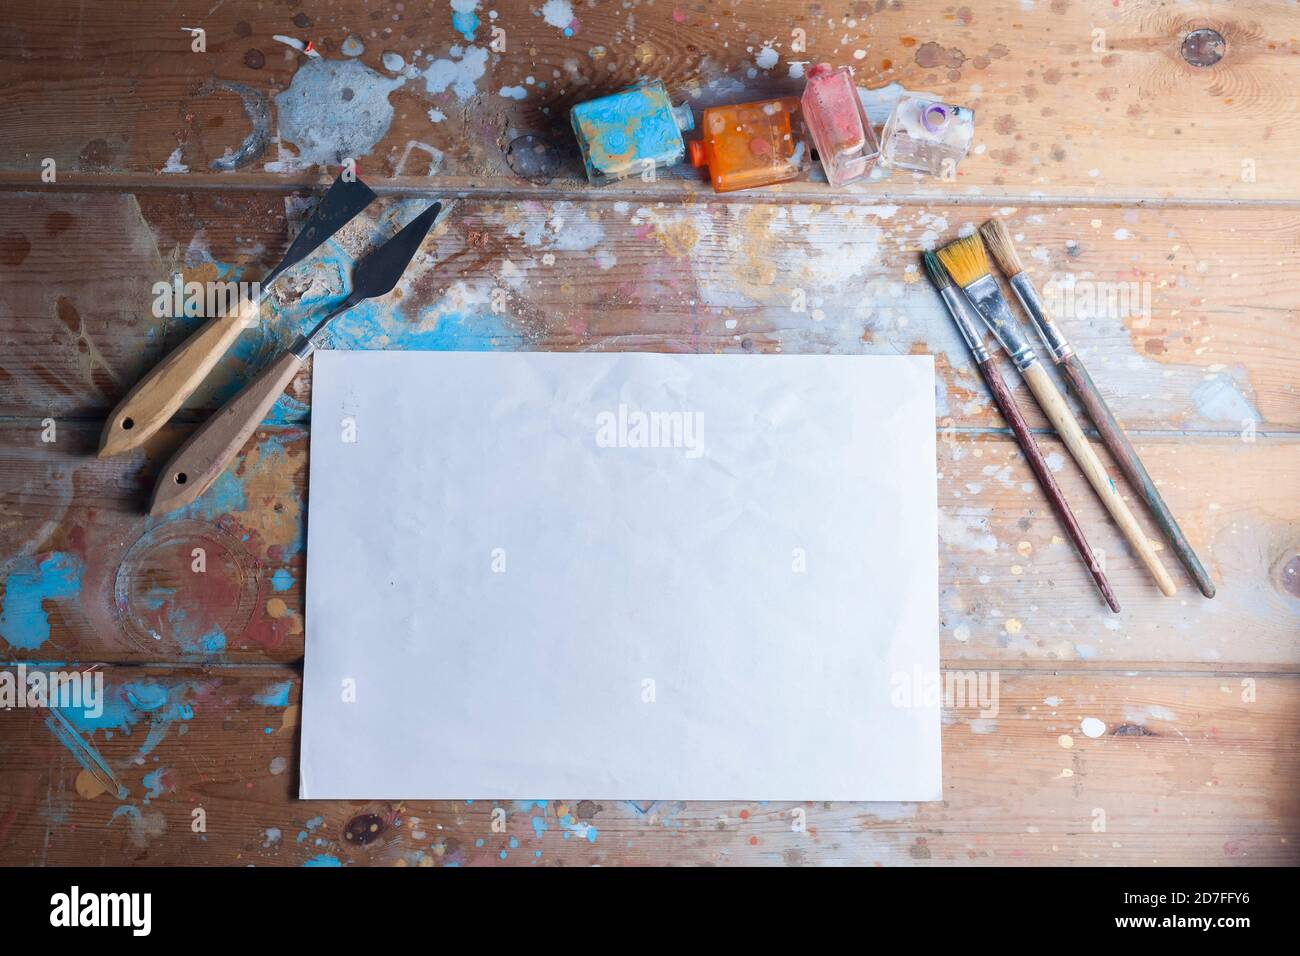 Artisti scrivania e materiali mockup.vari pennelli e pallete coltelli.l'immagine contiene un foglio bianco di carta ideale per un mockup creativo. Foto Stock